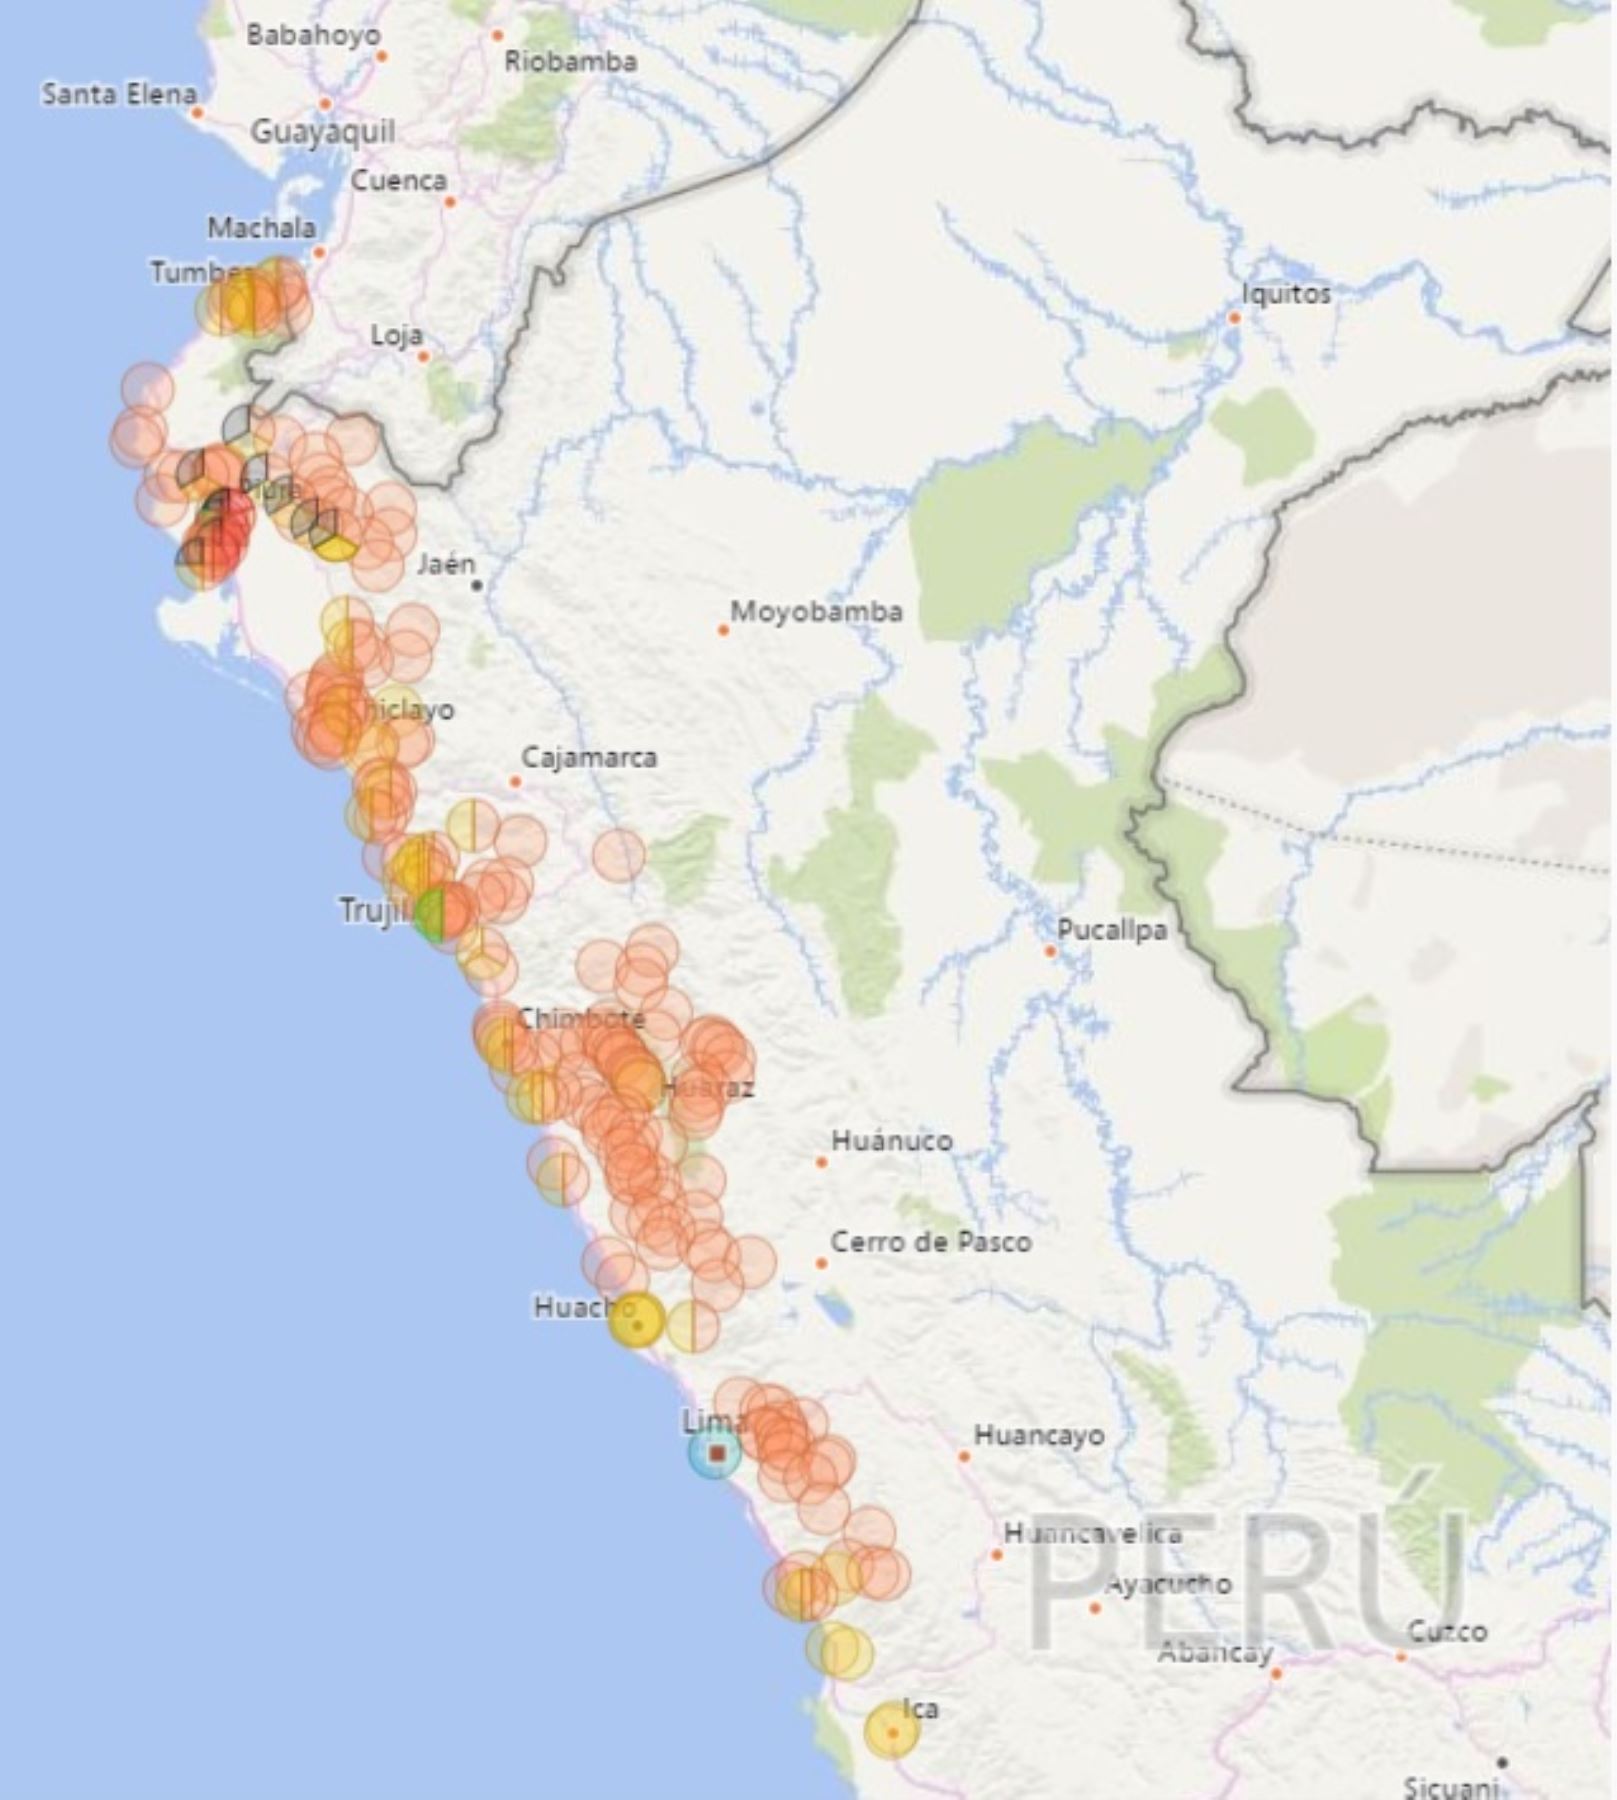 La Autoridad para la Reconstrucción con Cambios (ARCC) implementó en su portal web el Mapa de la Reconstrucción, un aplicativo que permite visualizar el estado actual de las más de 10,000 intervenciones en ejecución, en las regiones afectadas por El Niño Costero.